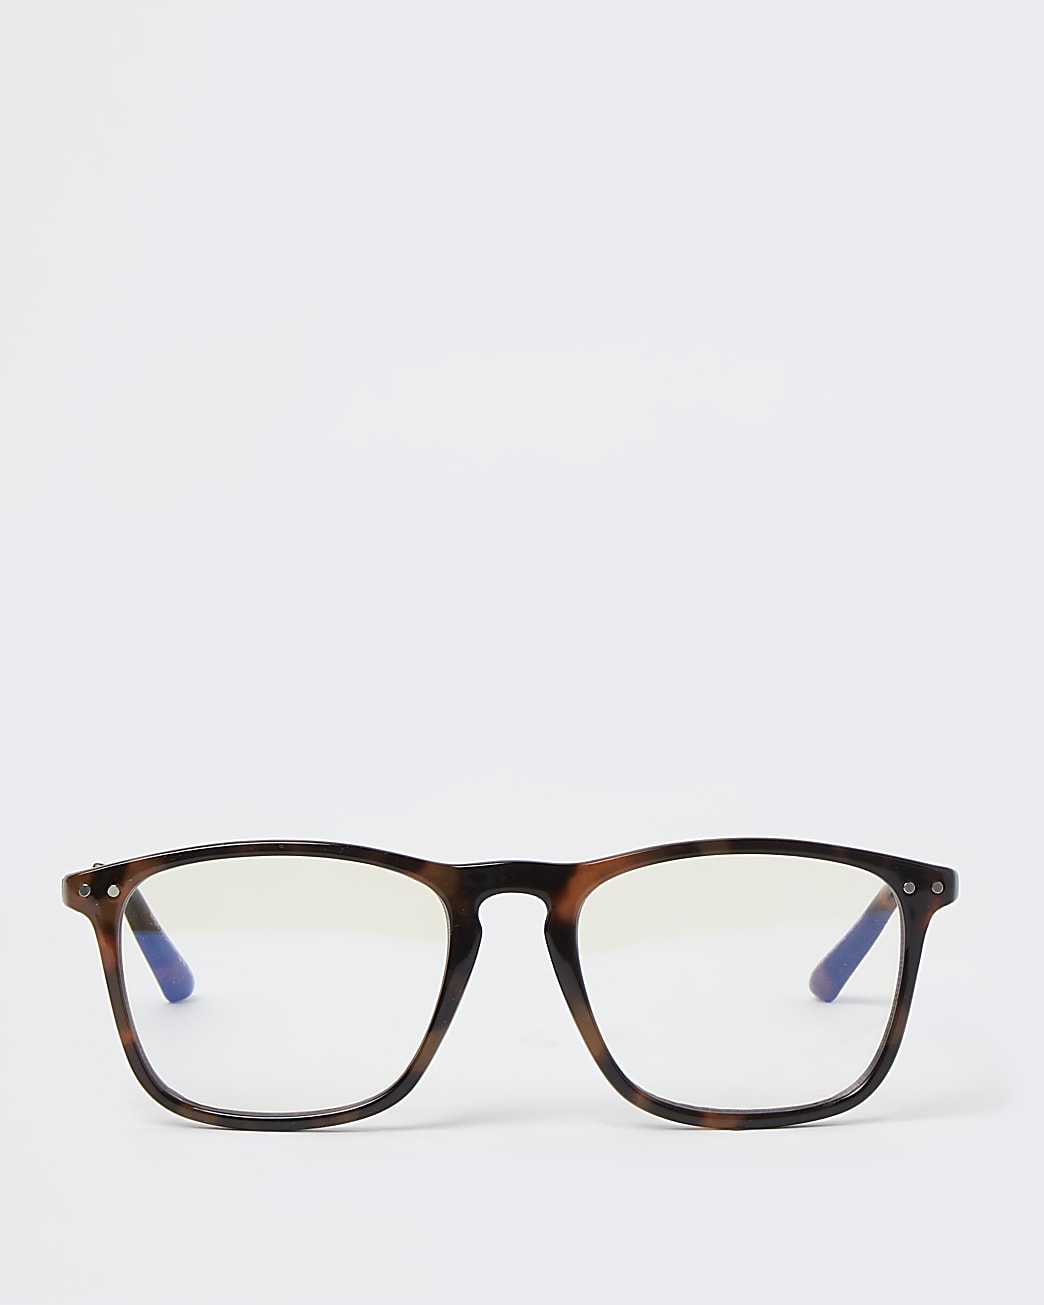 Brown tortoise shell blue light lens glasses